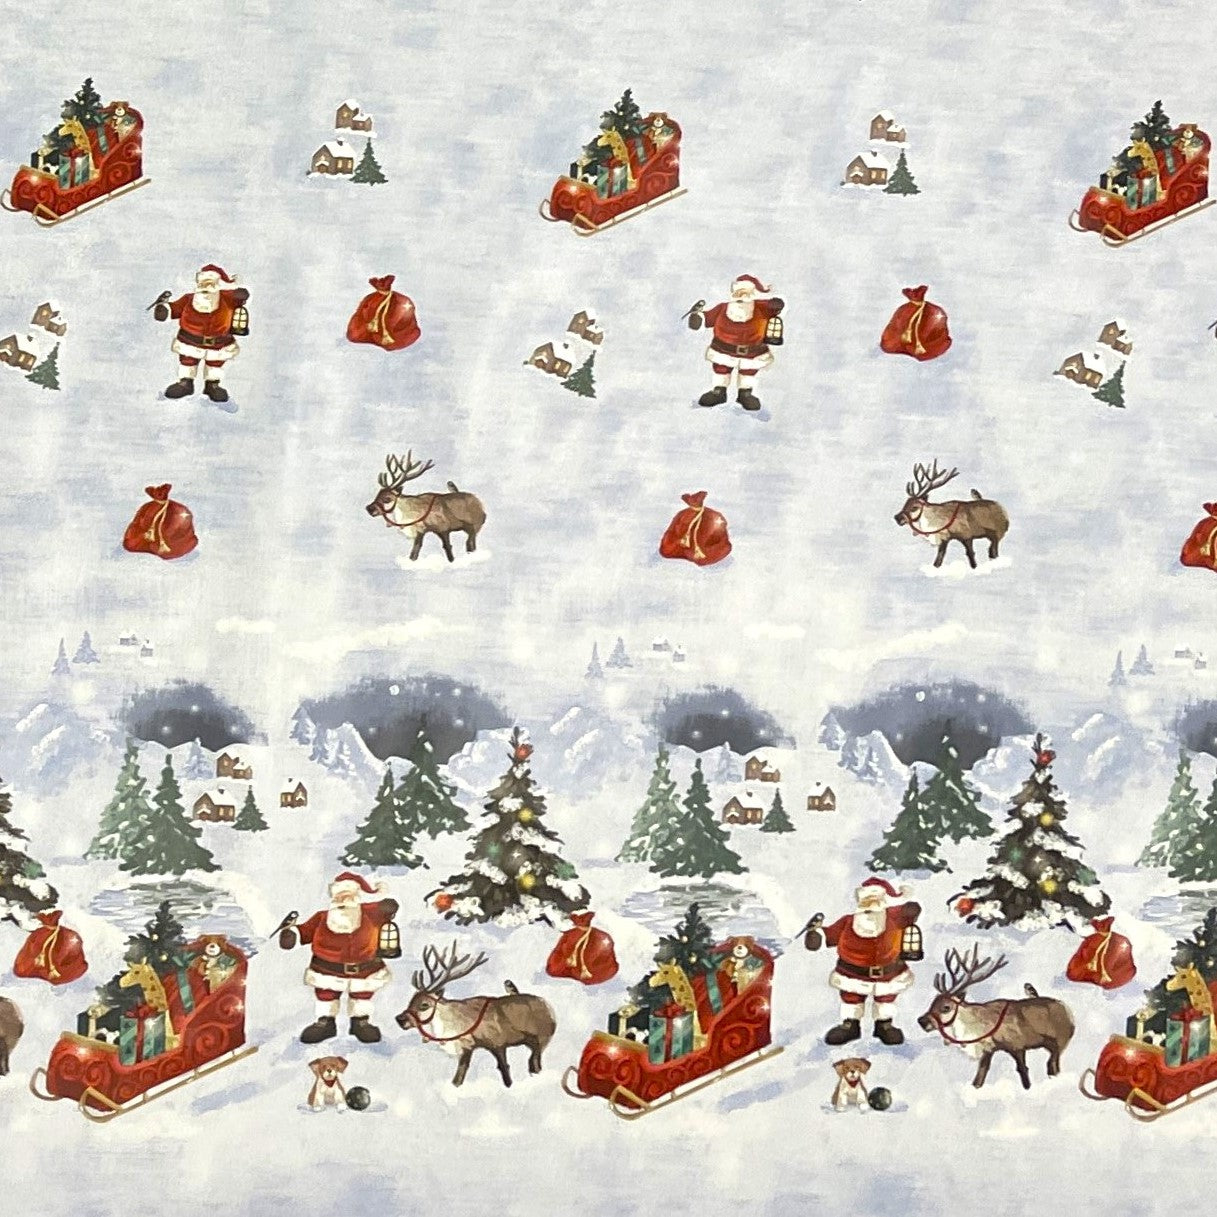 KEVKUS Wachstuch Tischdecke Weihnachten C141521 Bordürenmuster Weihnachtsmann Elch eckig rund oval